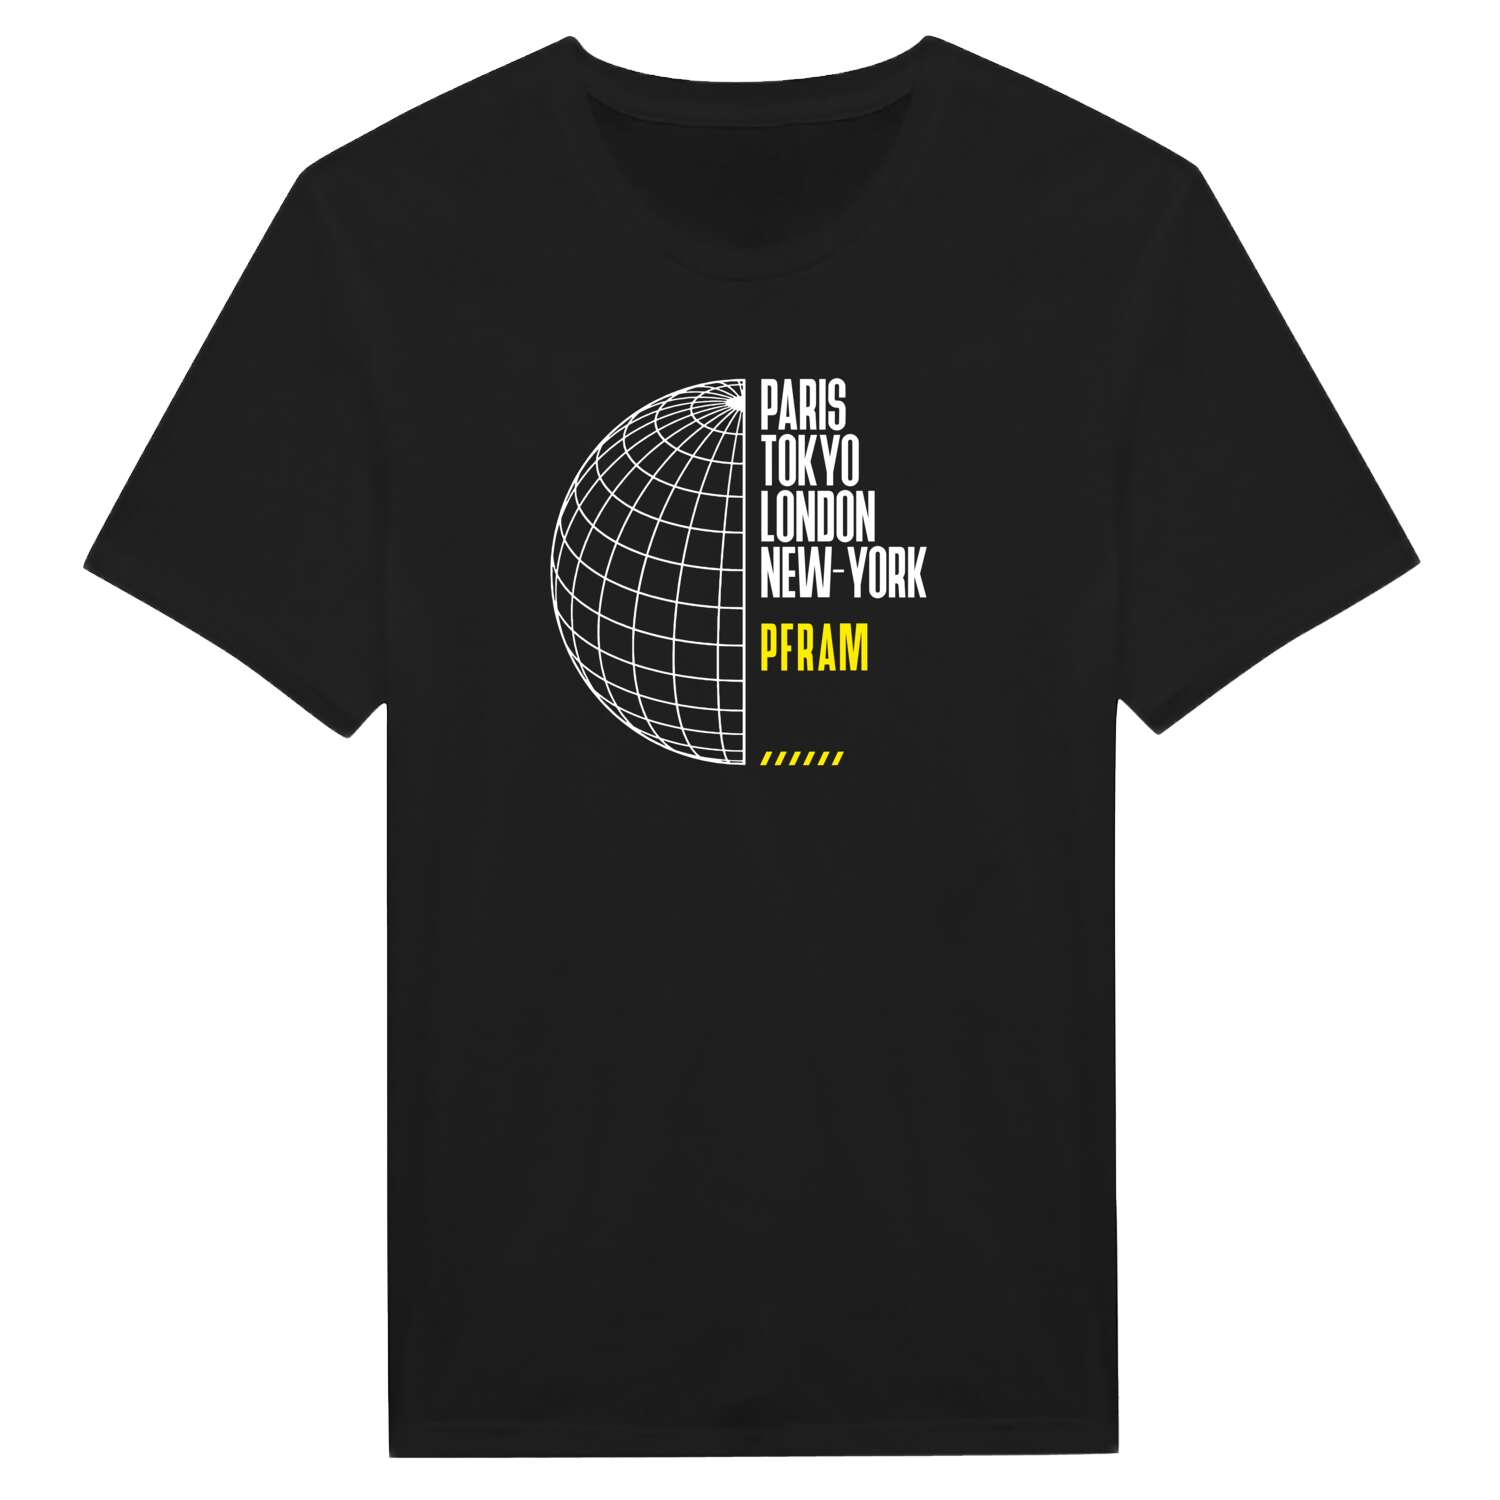 Pfram T-Shirt »Paris Tokyo London«